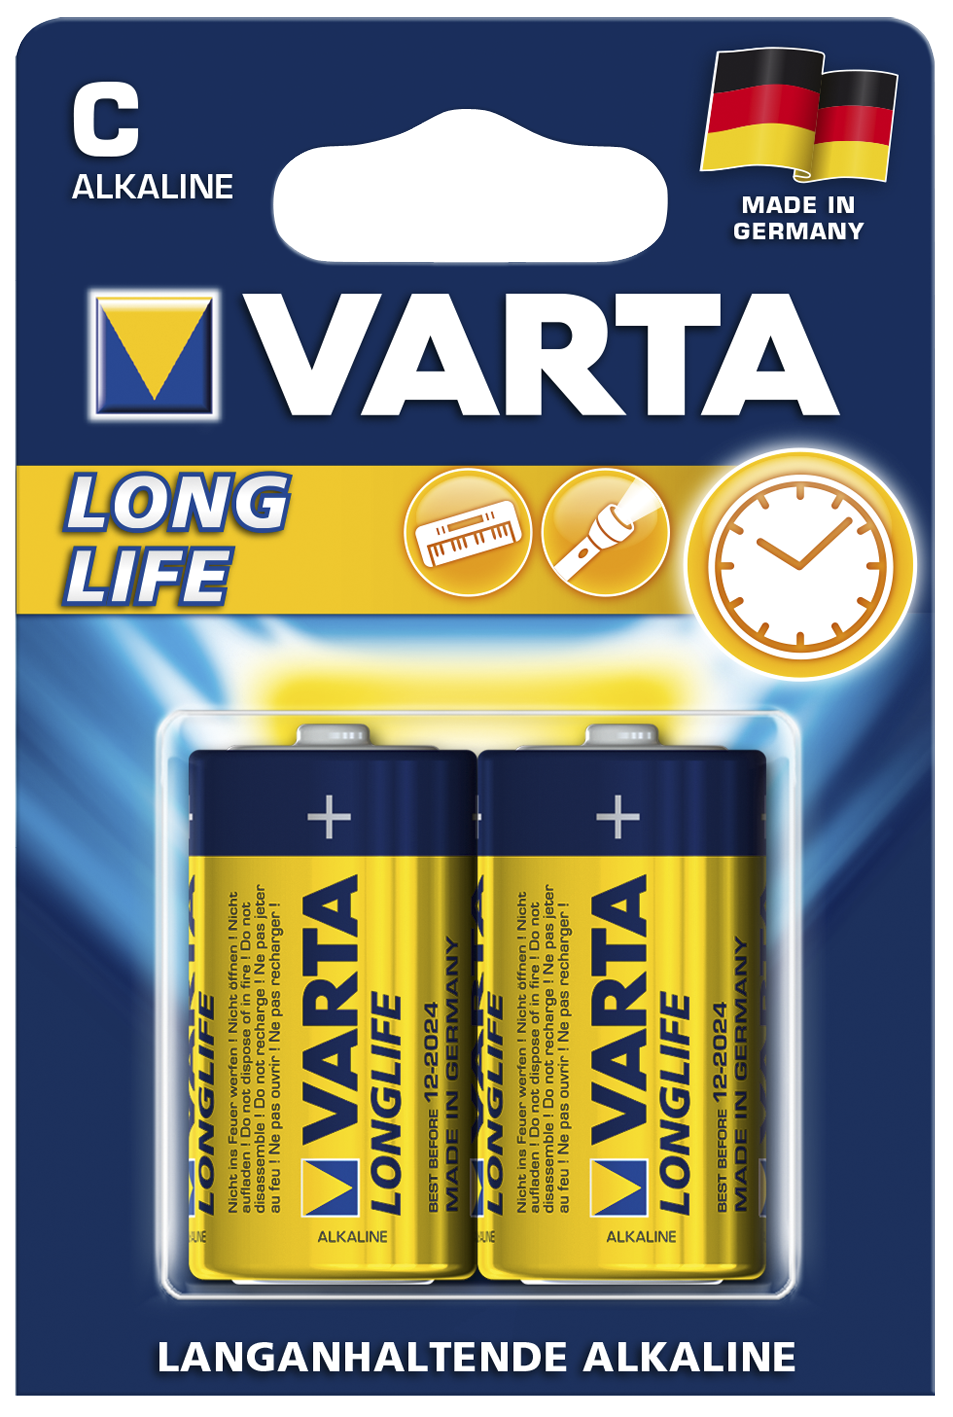 Baby-Batterie VARTA ''LONGLIFE'' Alkaline, 1,5 V, Typ C, 2er-Blister